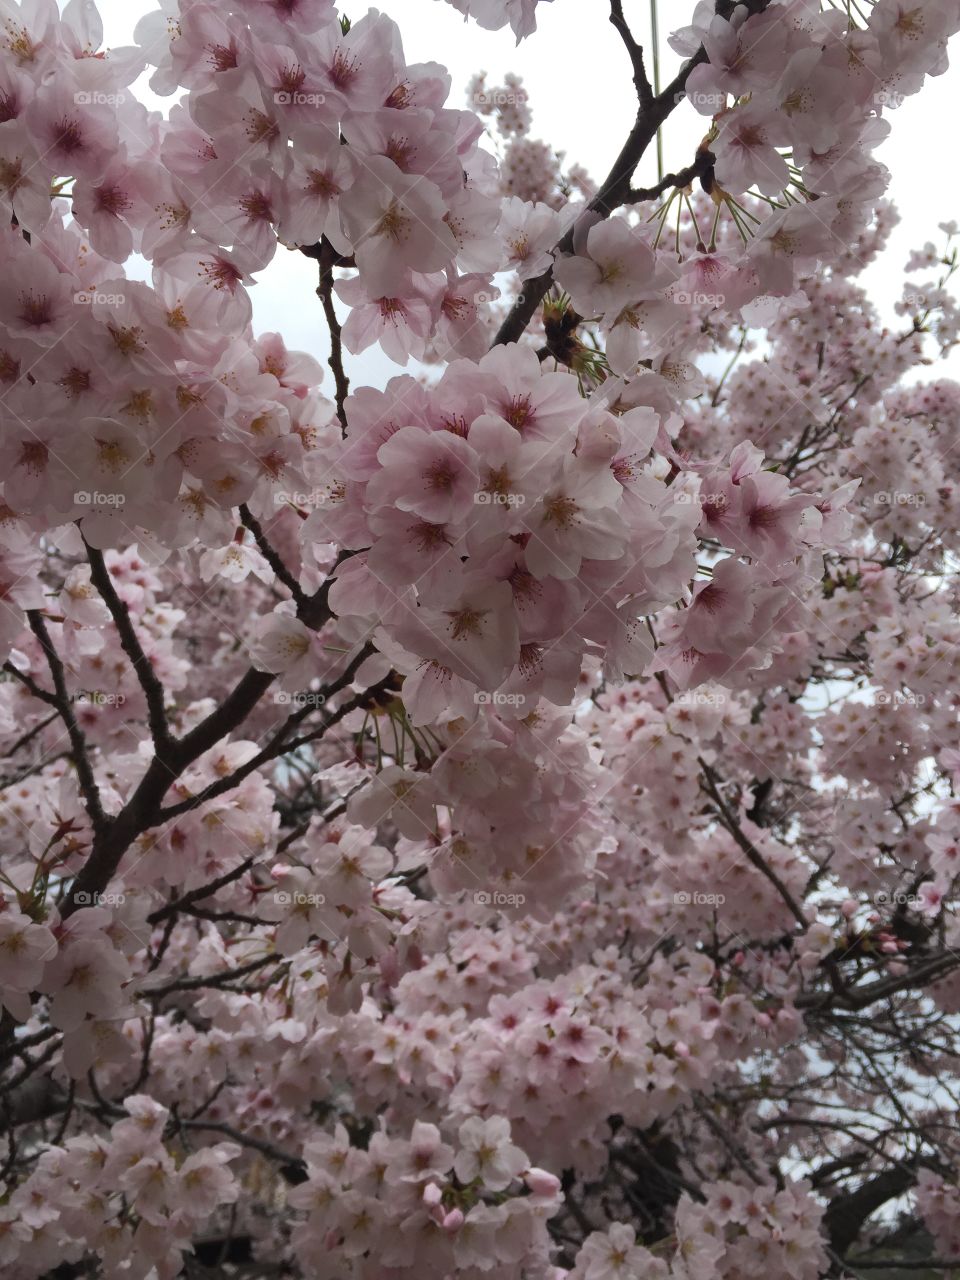 Cherry blossoms in rain